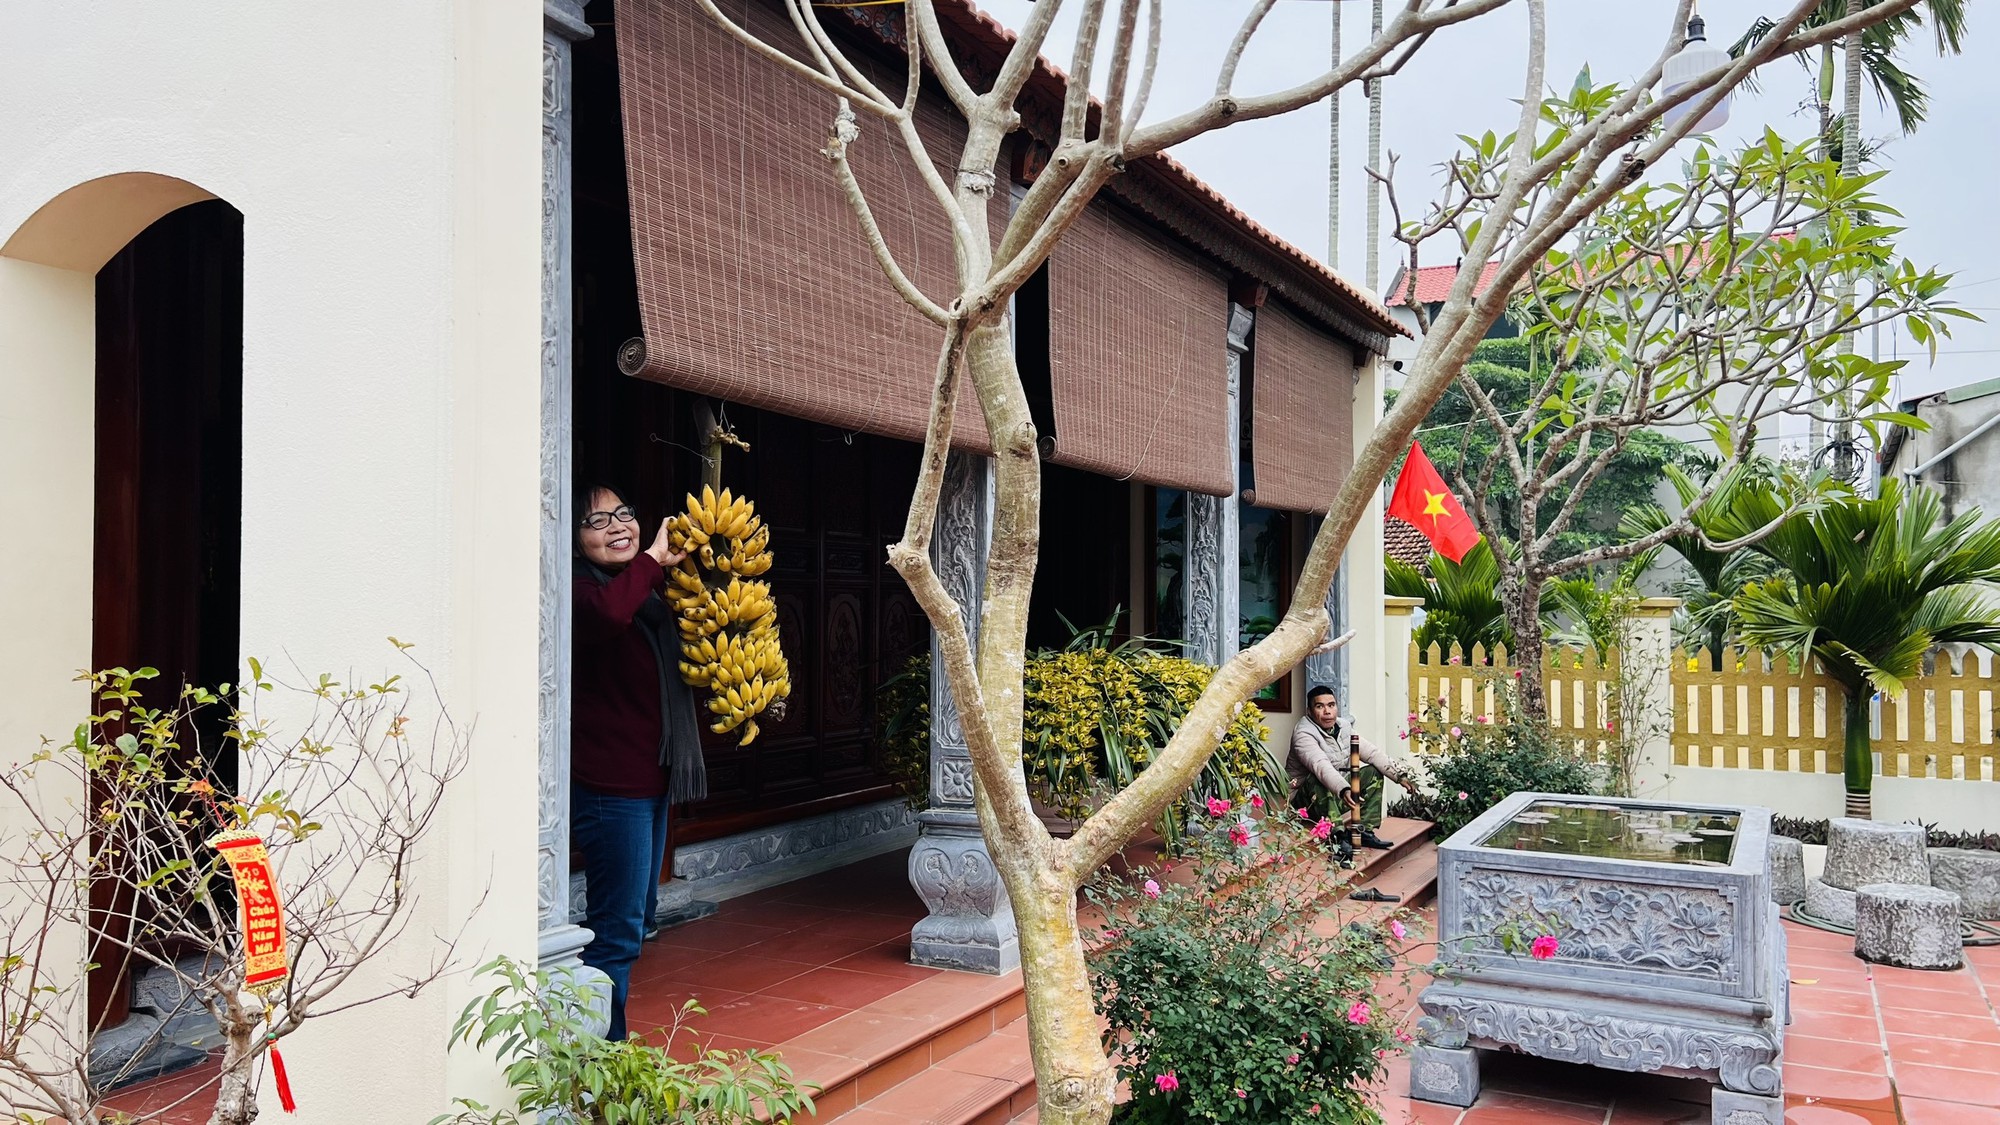 Cận cảnh nhà vườn xinh đẹp của ca sĩ Hồ Quang 8 - Ảnh 13.